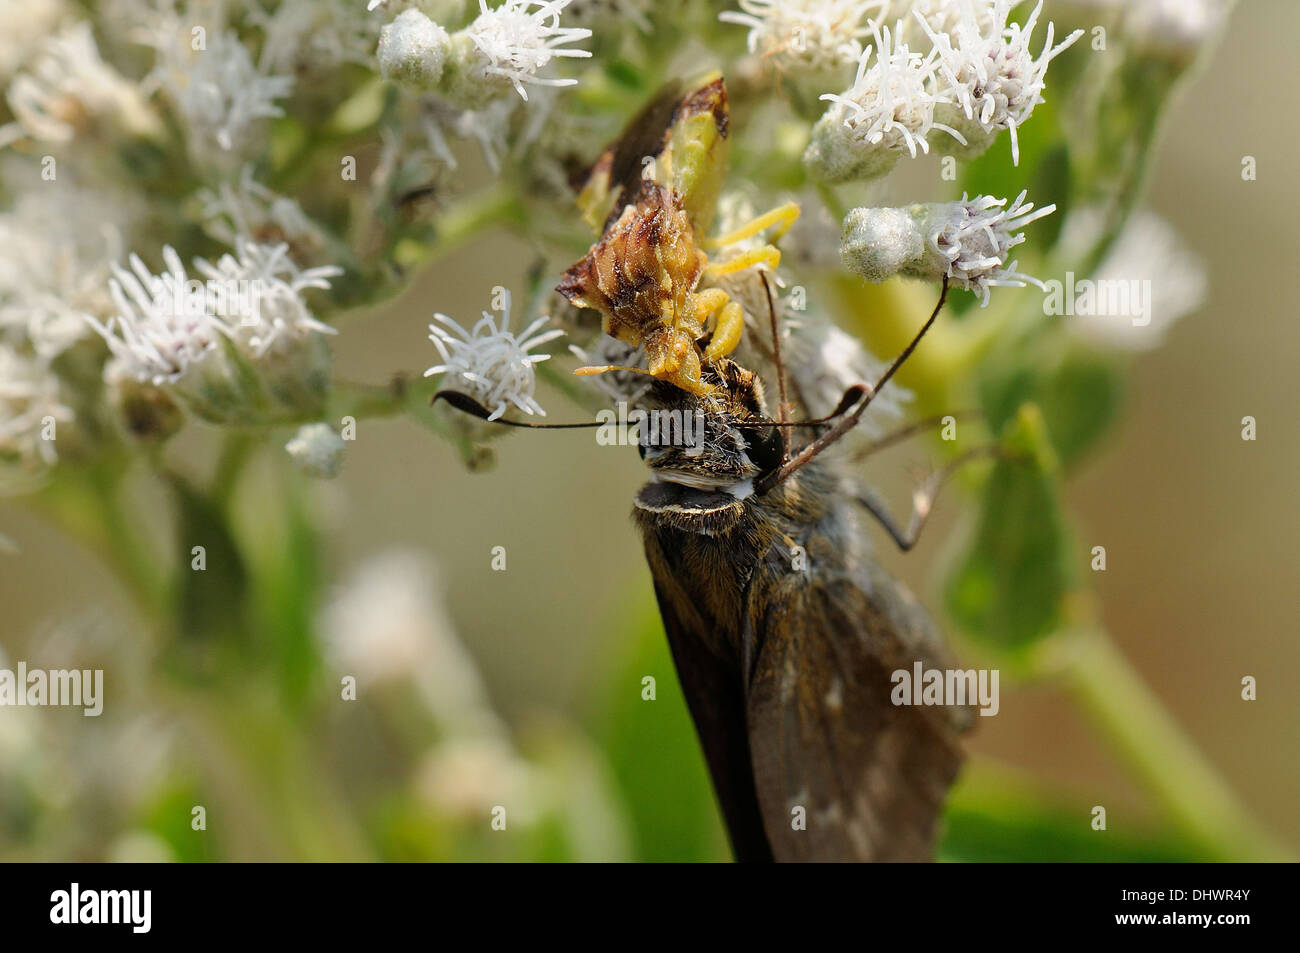 Ambush Bug with prey Stock Photo